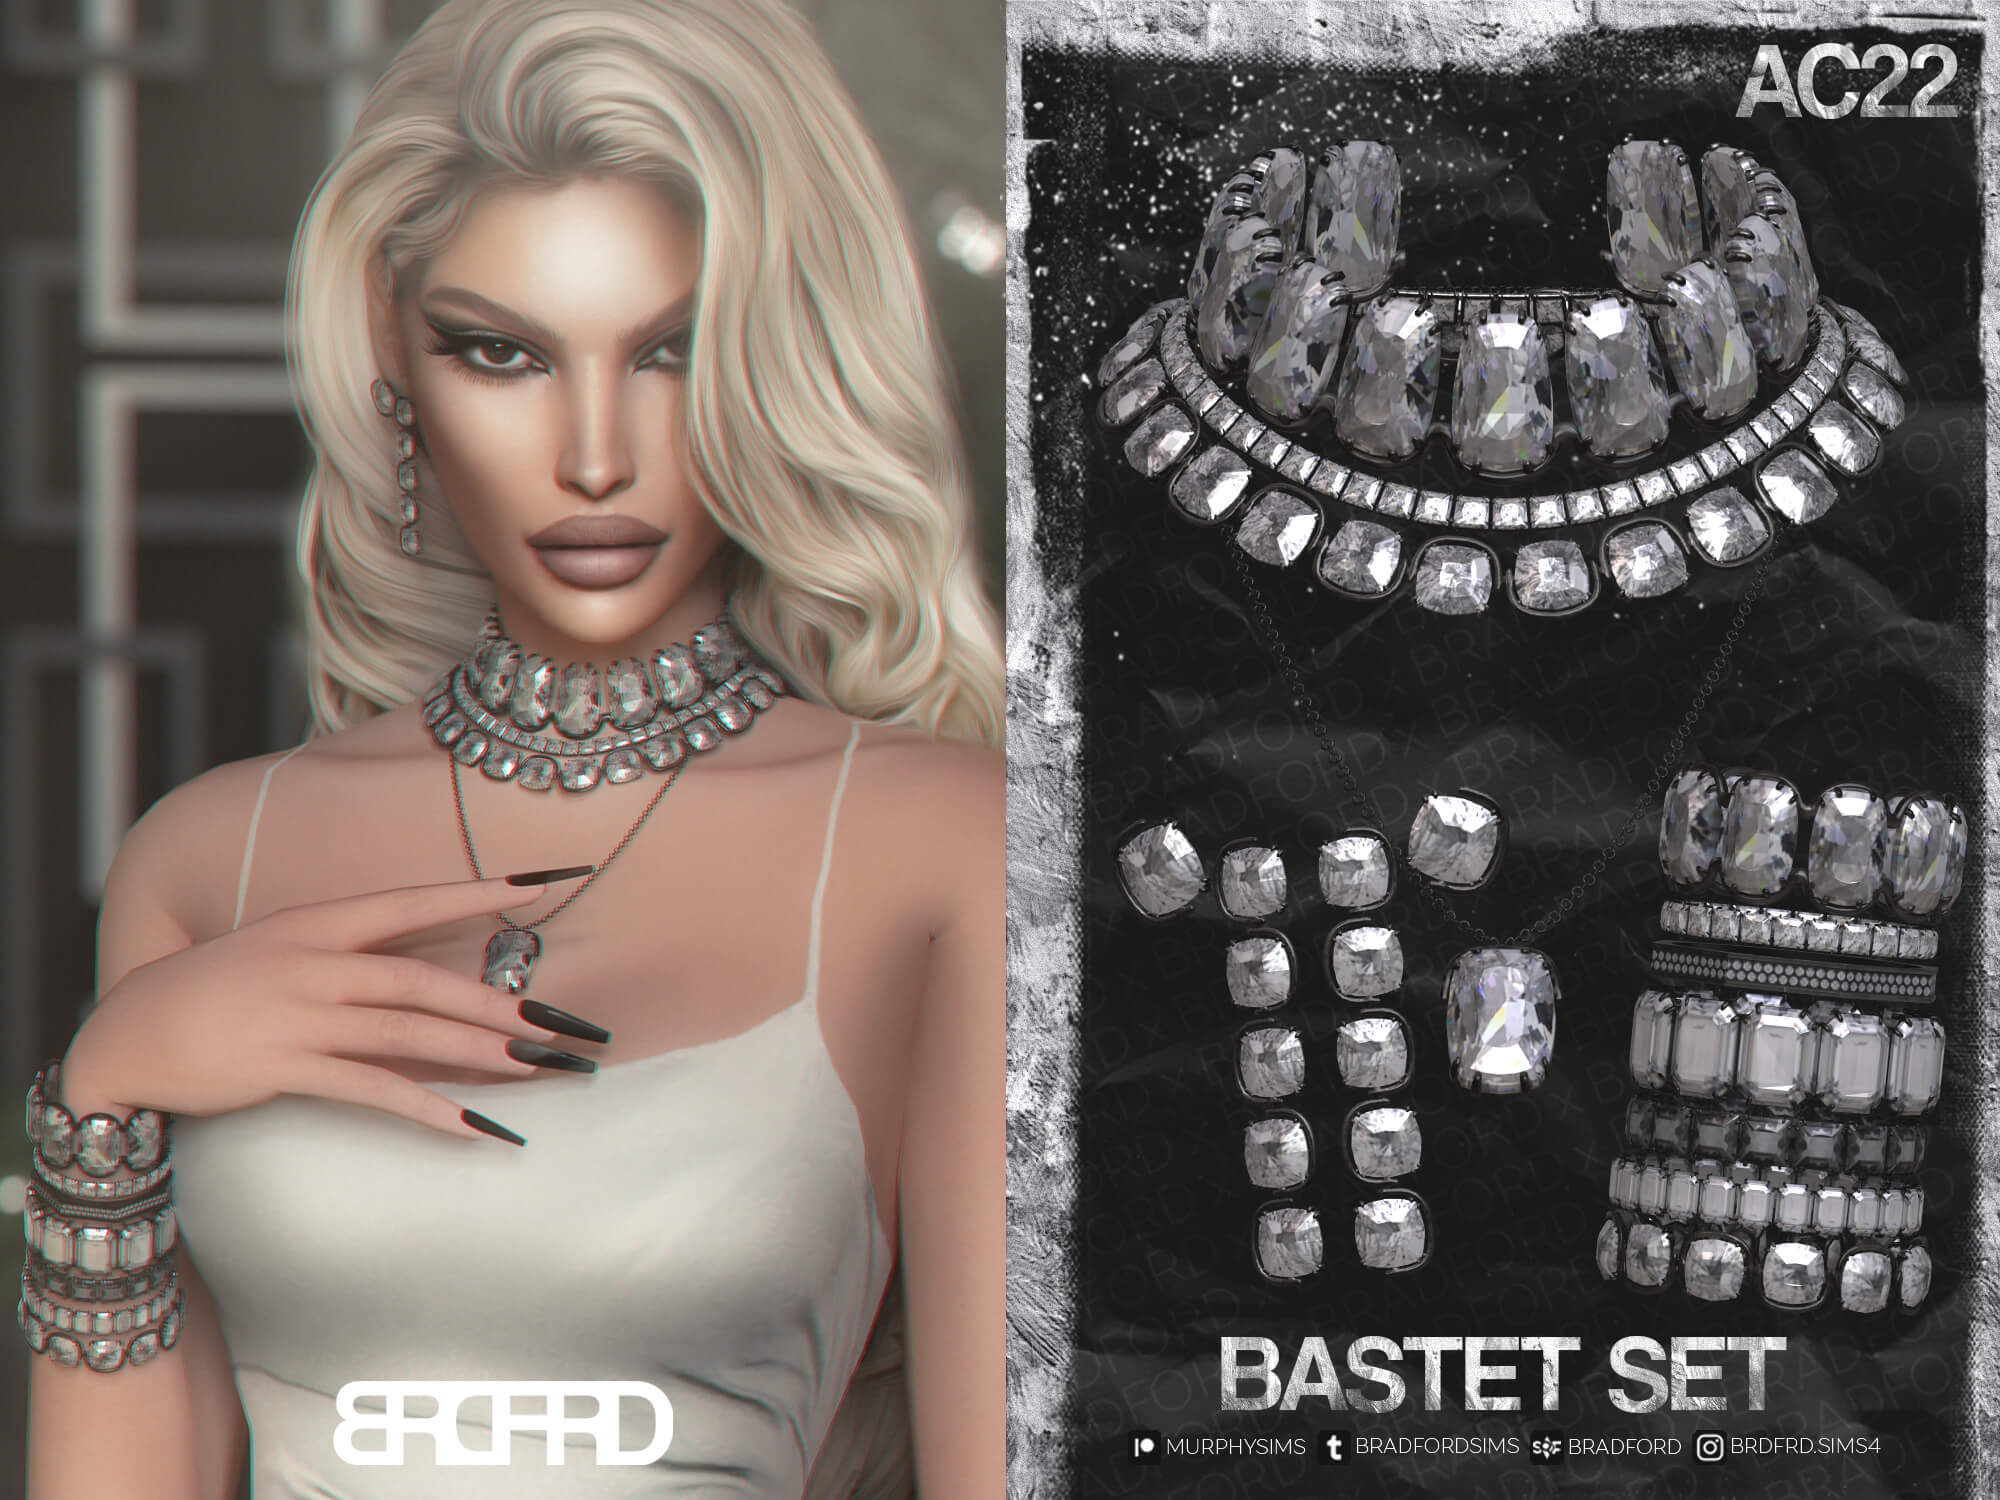 BASTET SET - Best Sims Mods